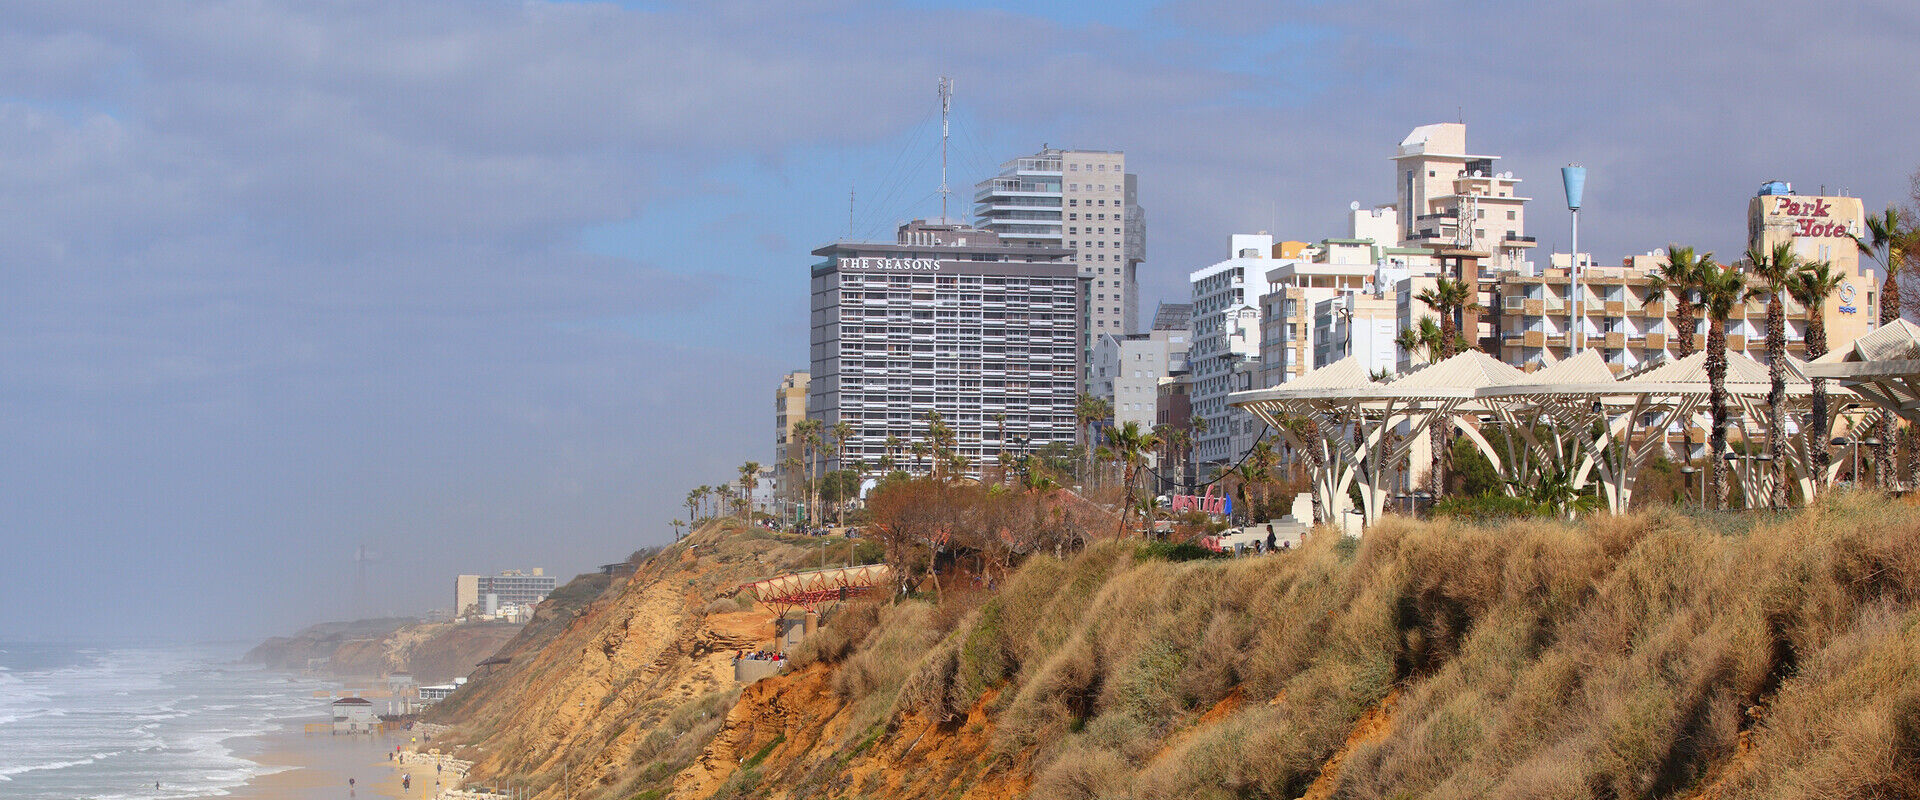 מלון העונות חוף נתניה (צילום: LeonP, shutterstock)